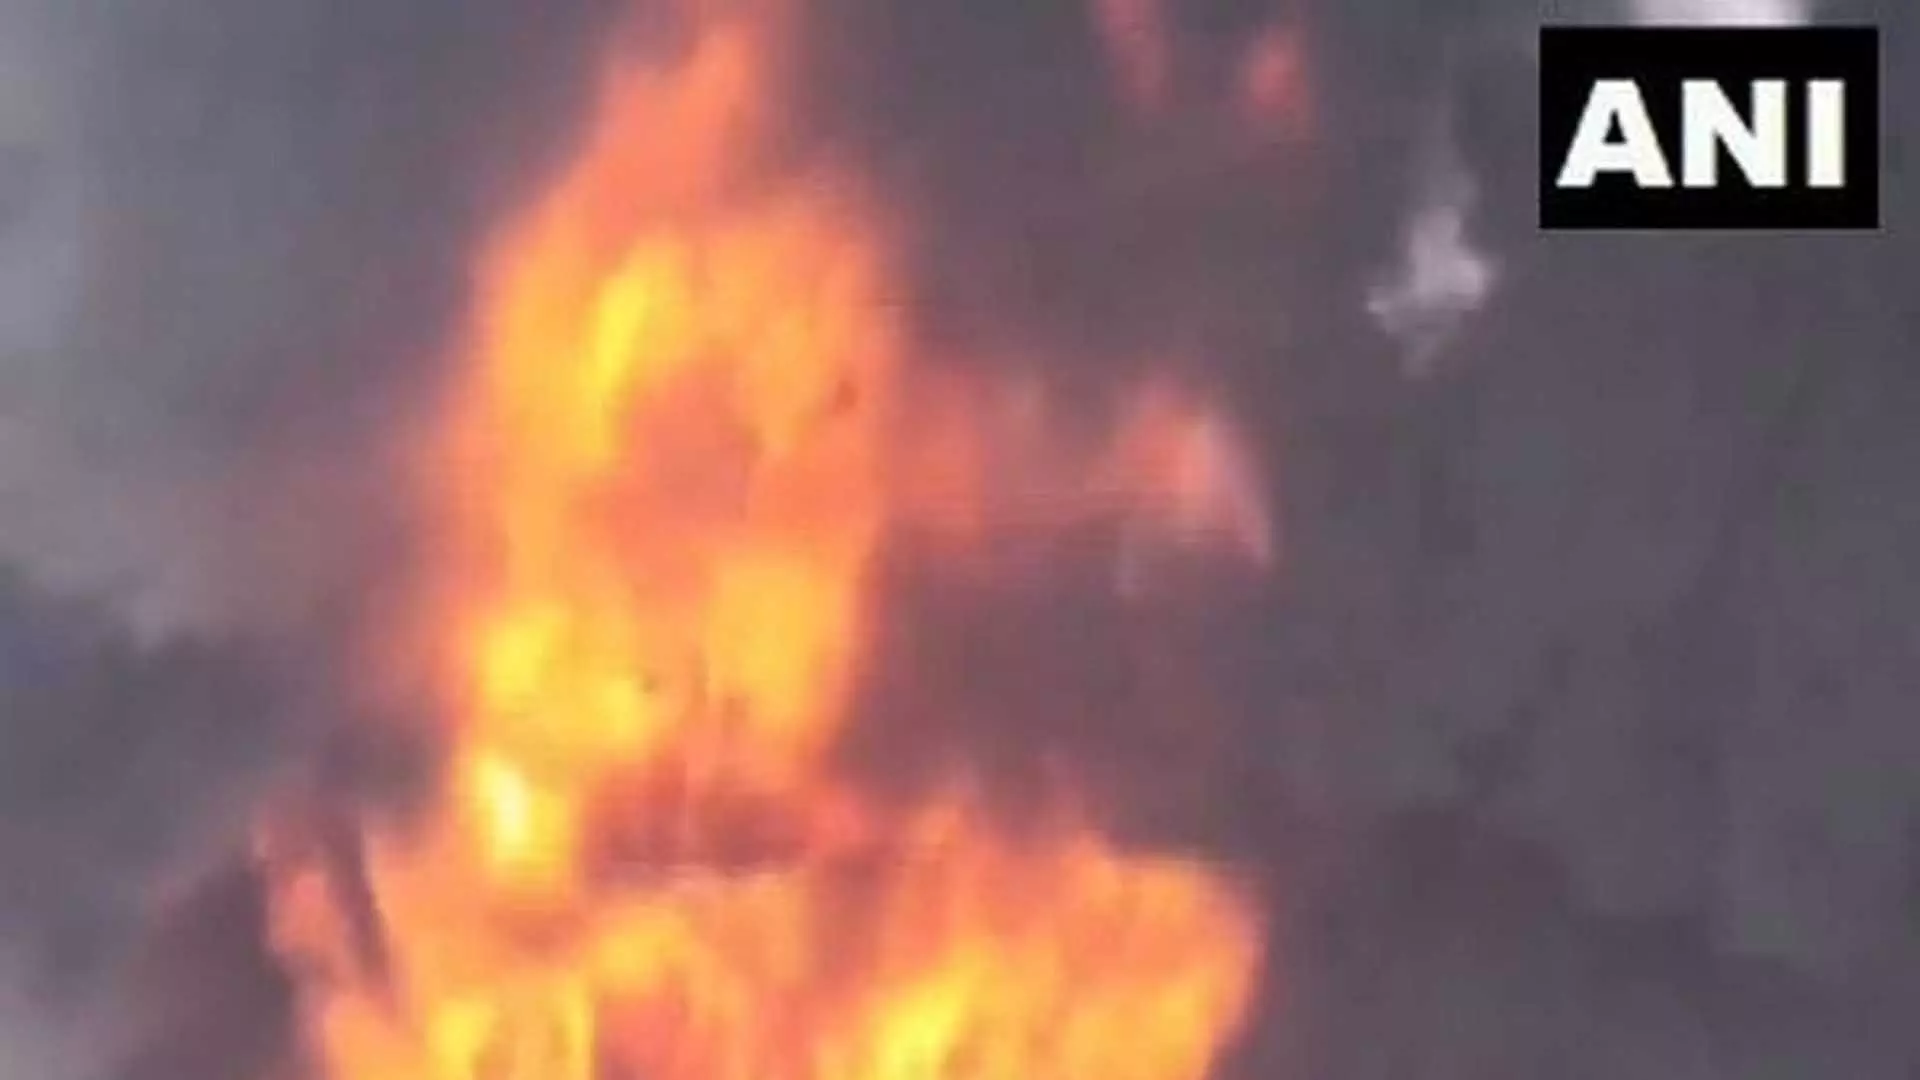 Haryana के खुंडेवाला गांव में एक केमिकल फैक्ट्री में लगी आग